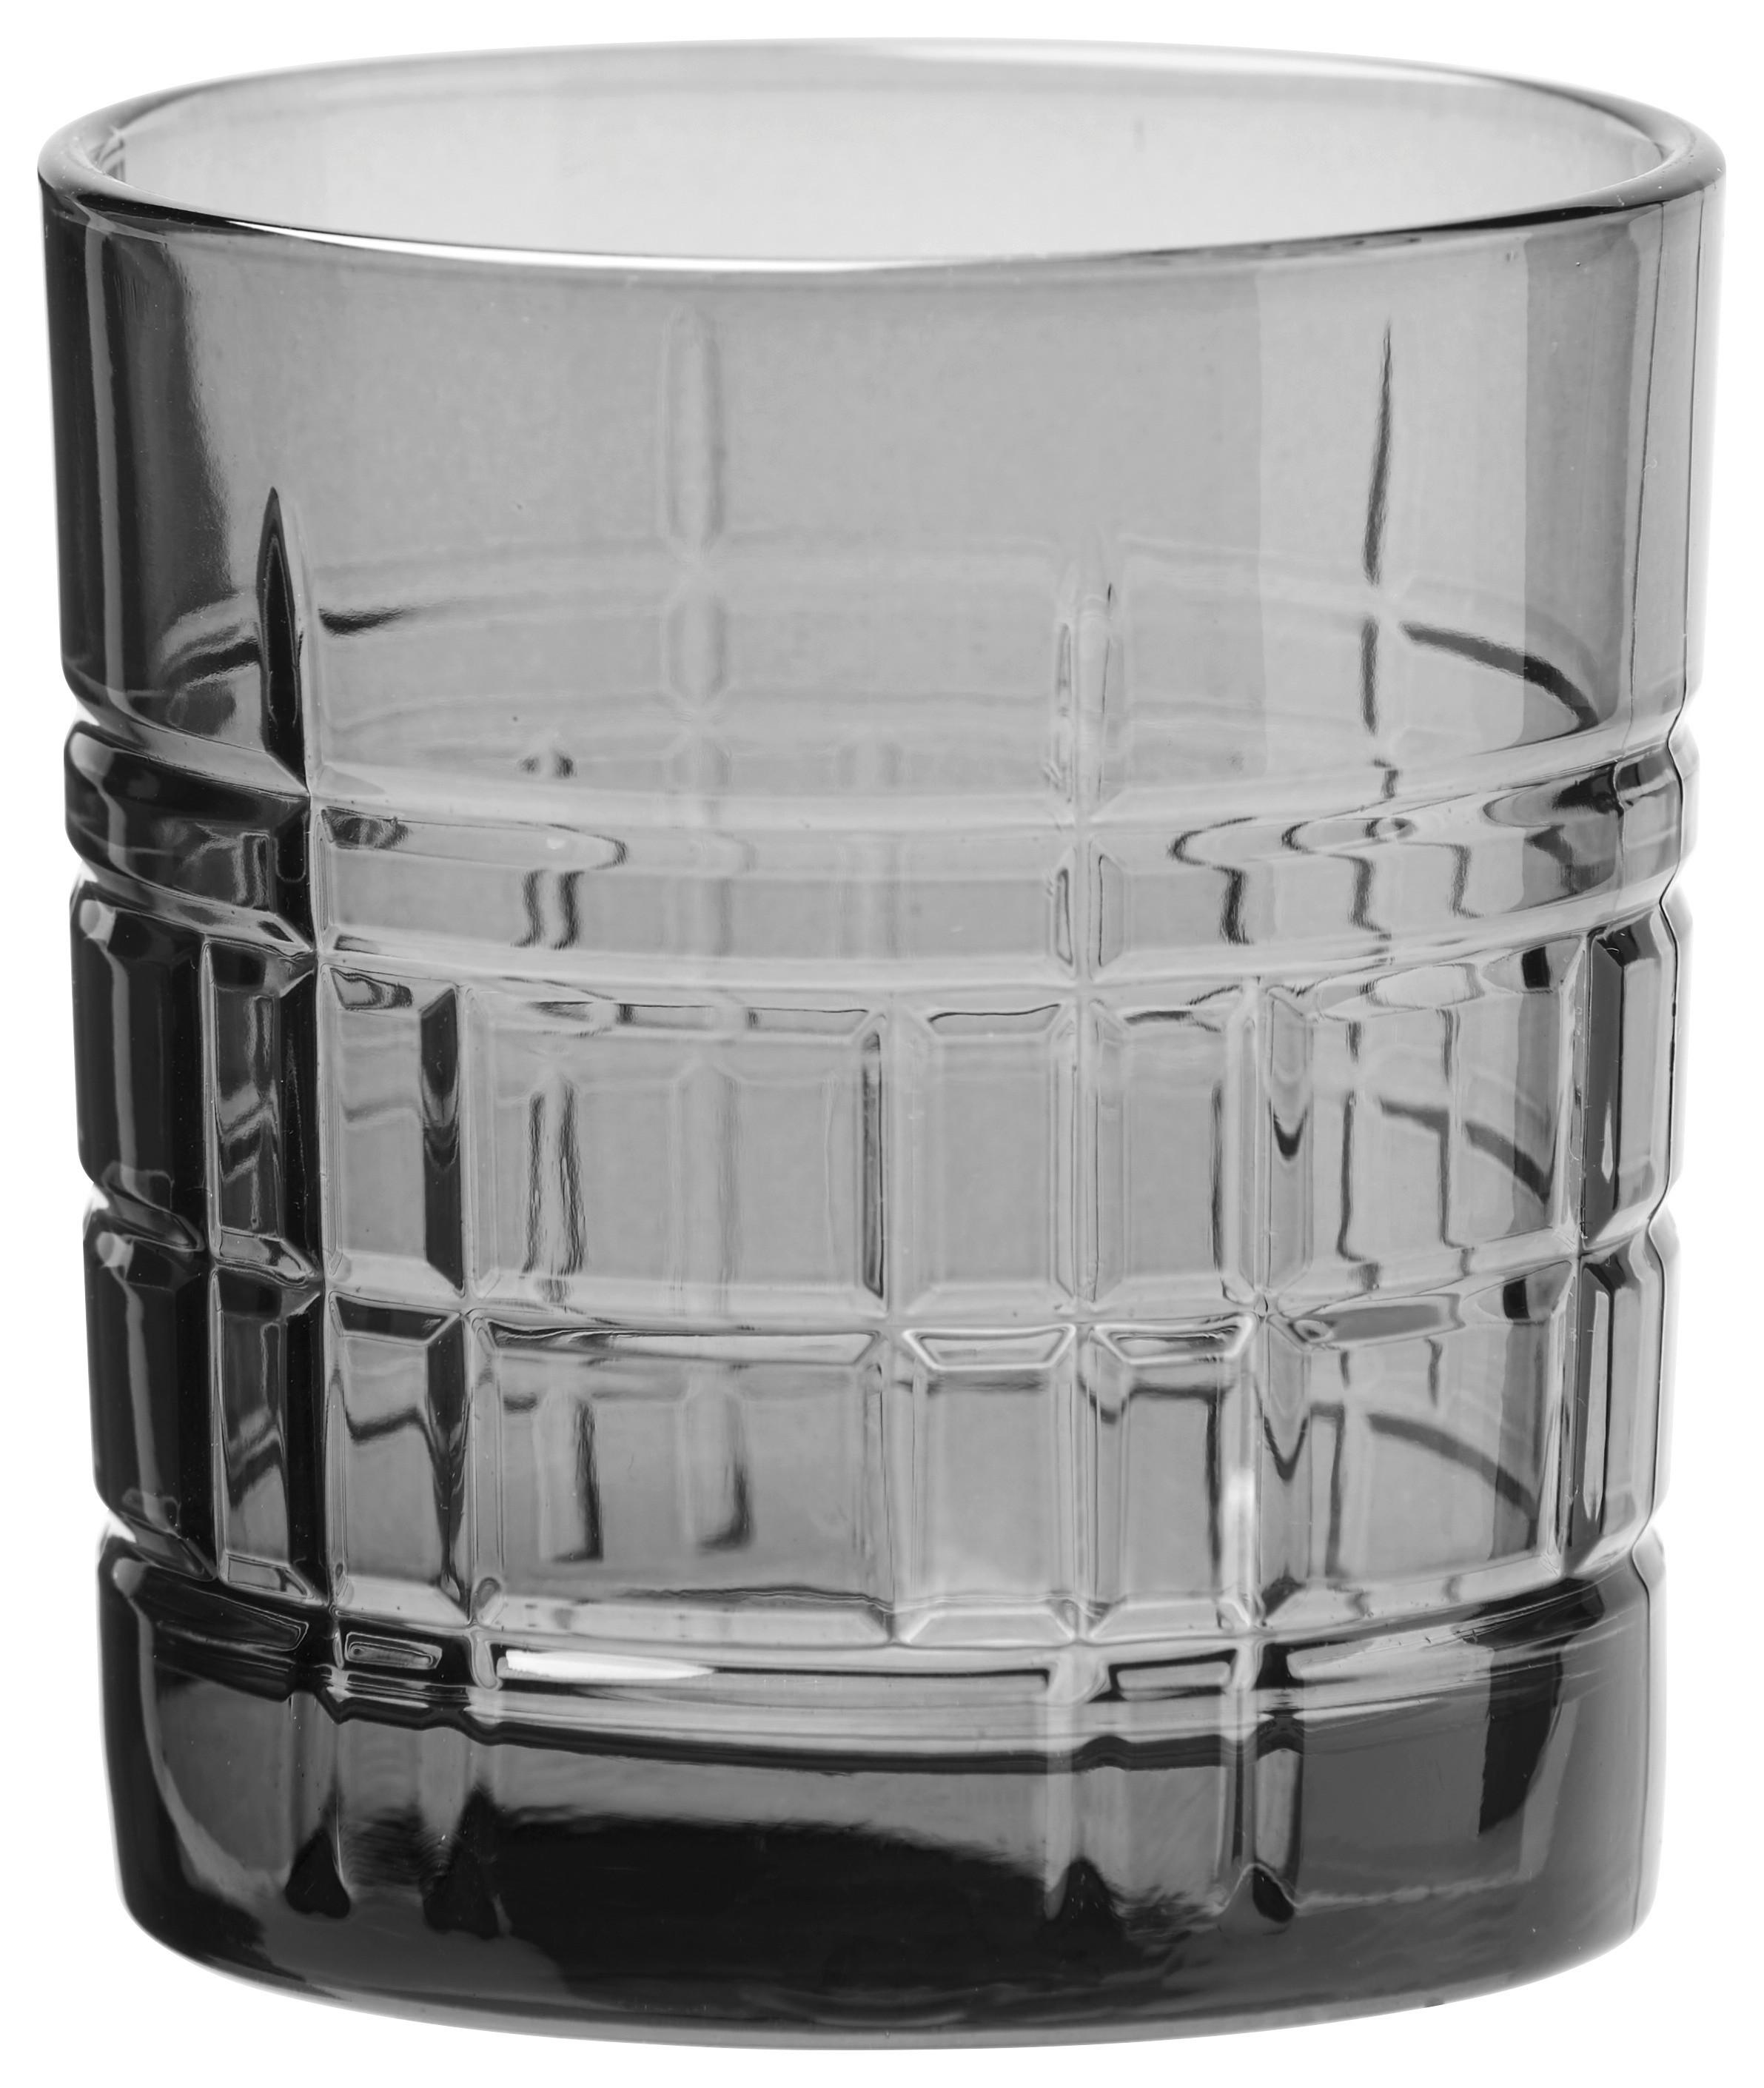 Whiskyglas Black Skye in Dunkelgrau - Dunkelgrau, Modern, Glas (8,4/9cm) - Premium Living